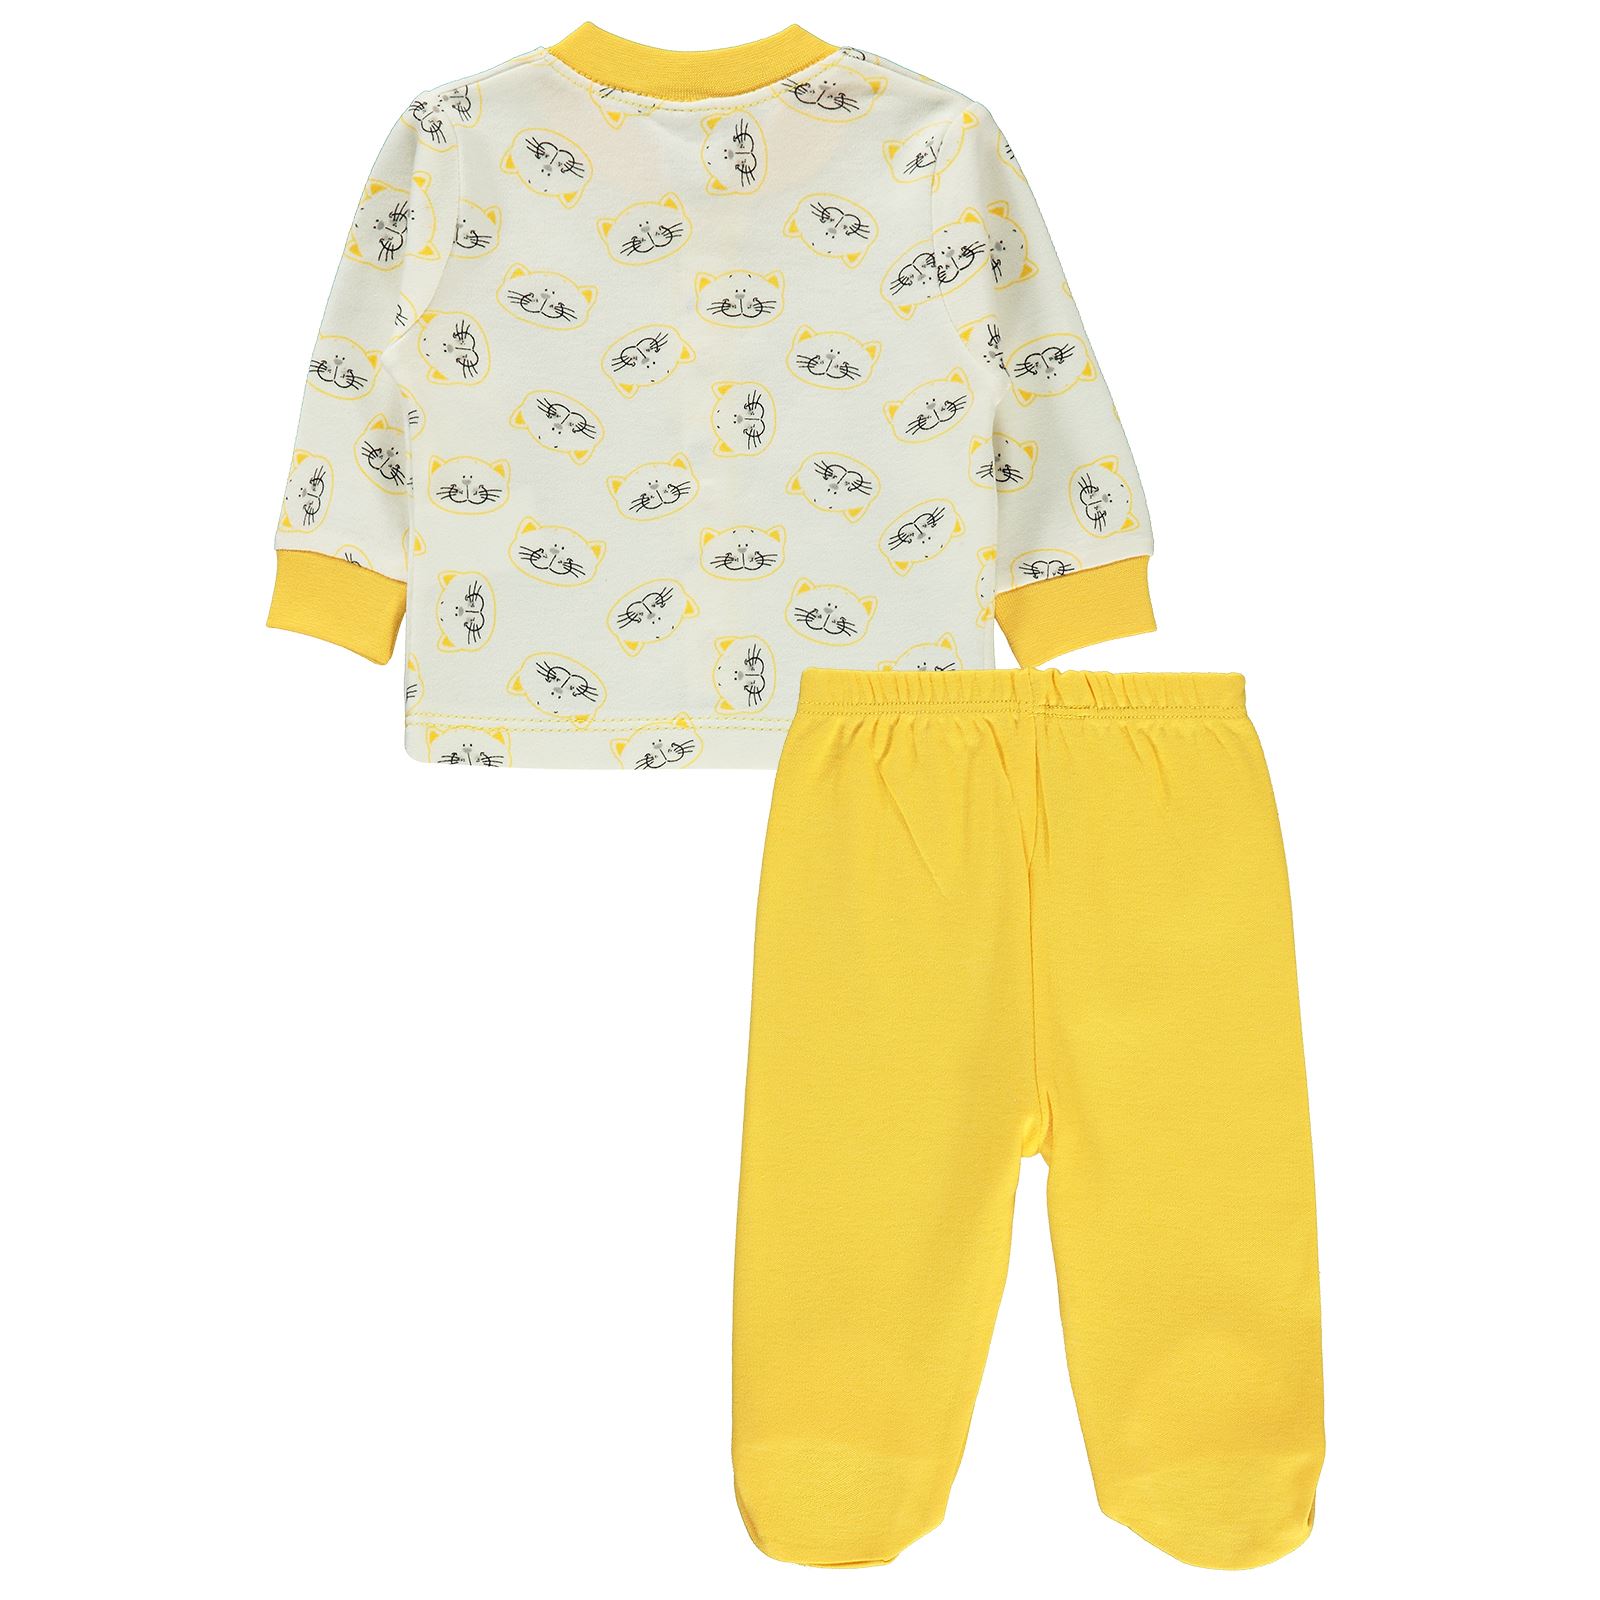 Misket Erkek Bebek Pijama Takımı 0-6 Ay Sarı